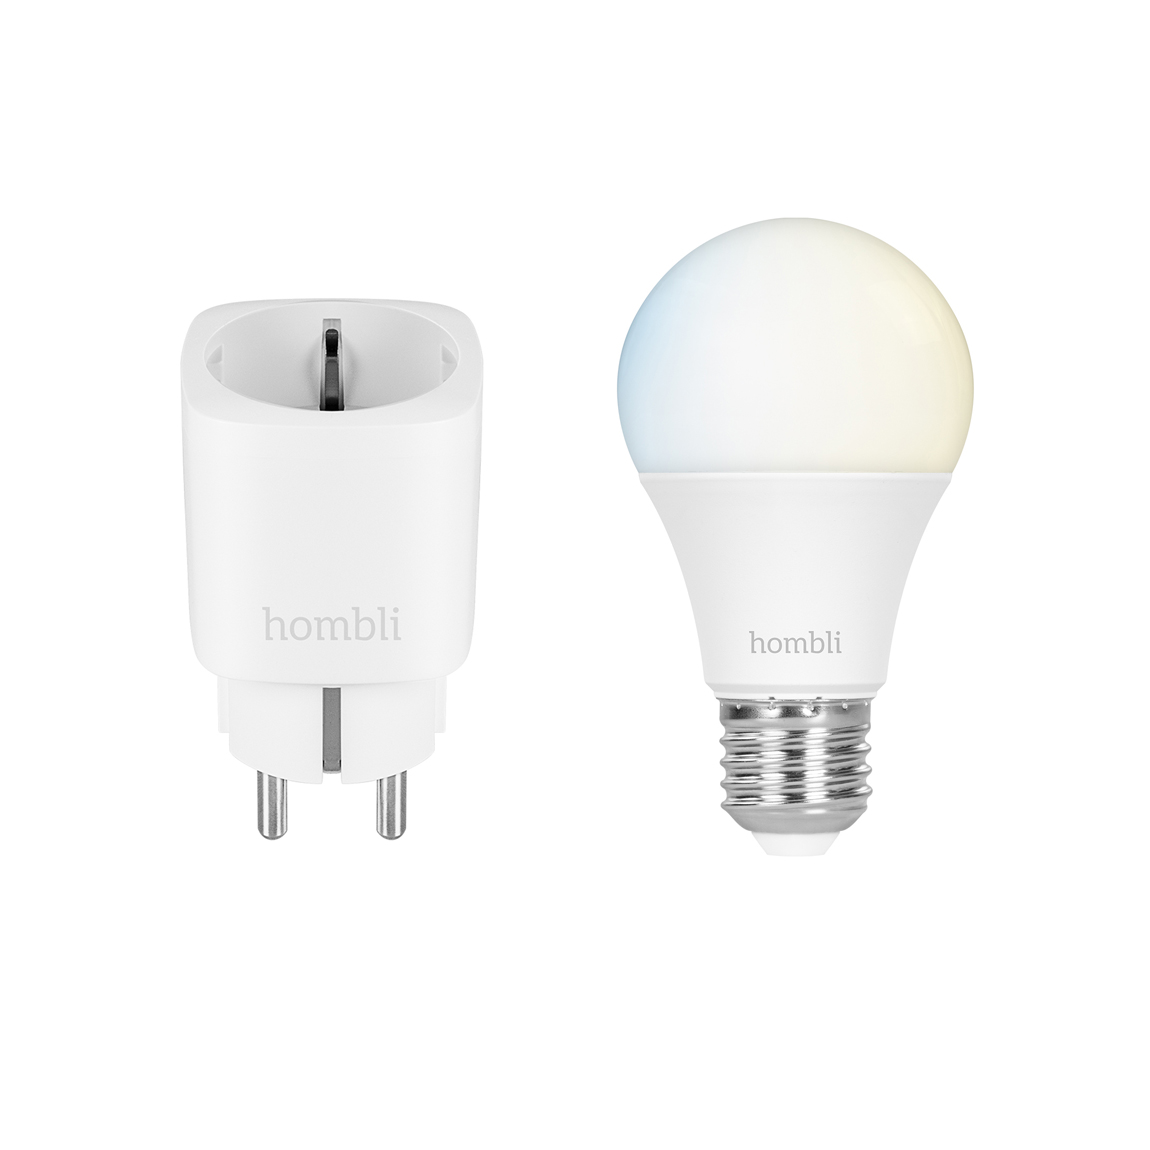 Hombli Smarte Steckdose + Smart Bulb E27 white-Lampe